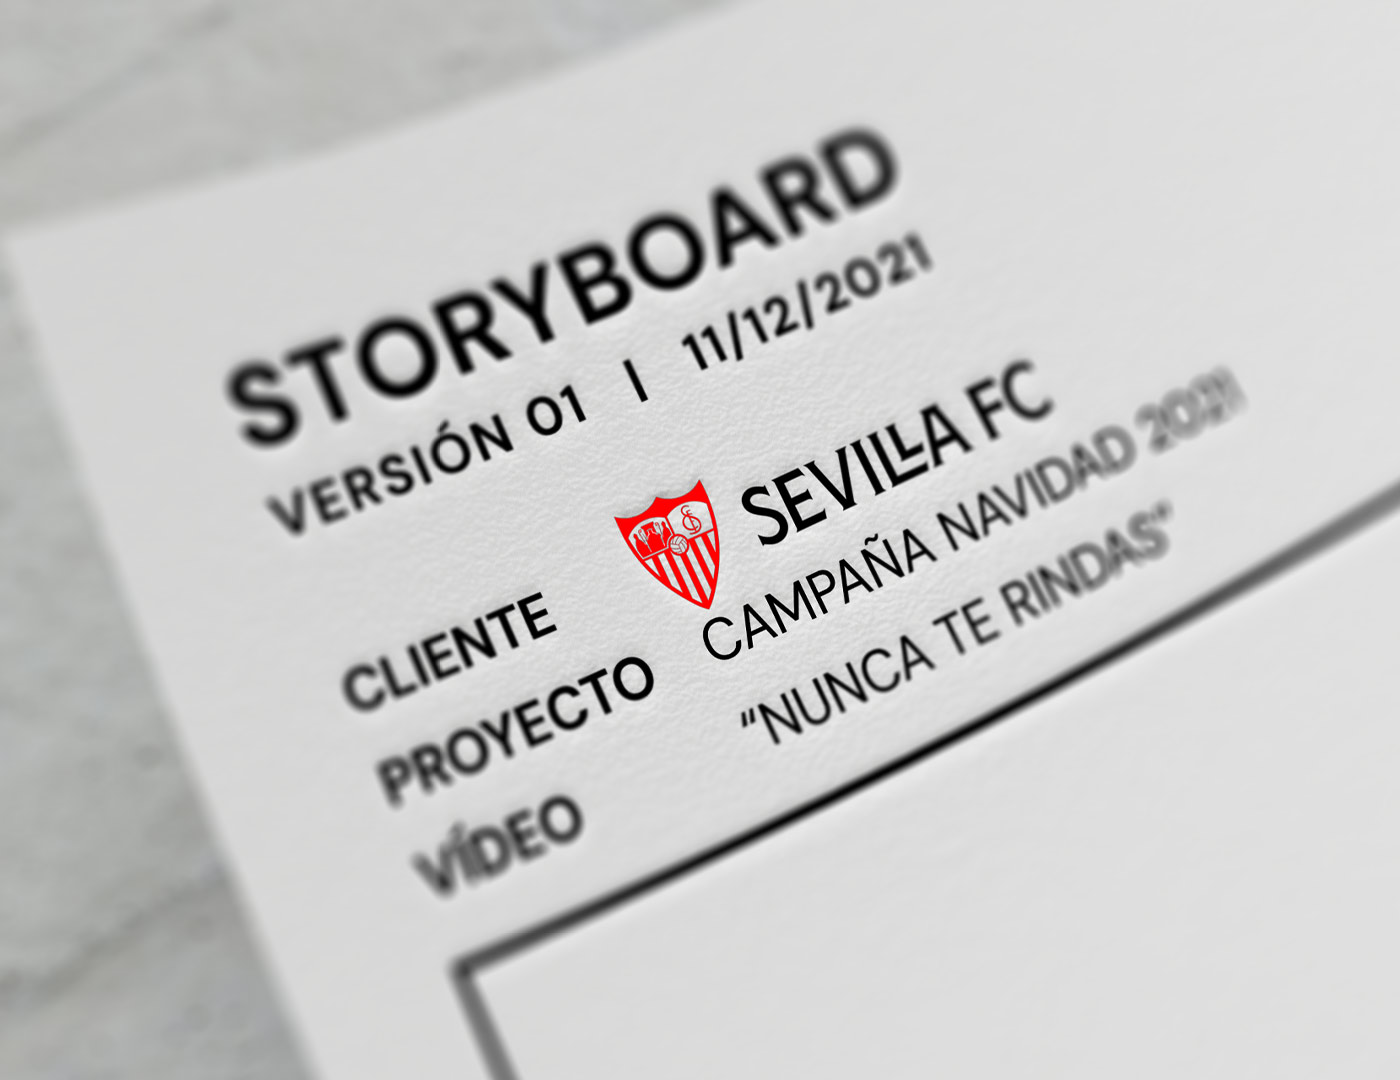 Sevilla FC - Manuel Perujo